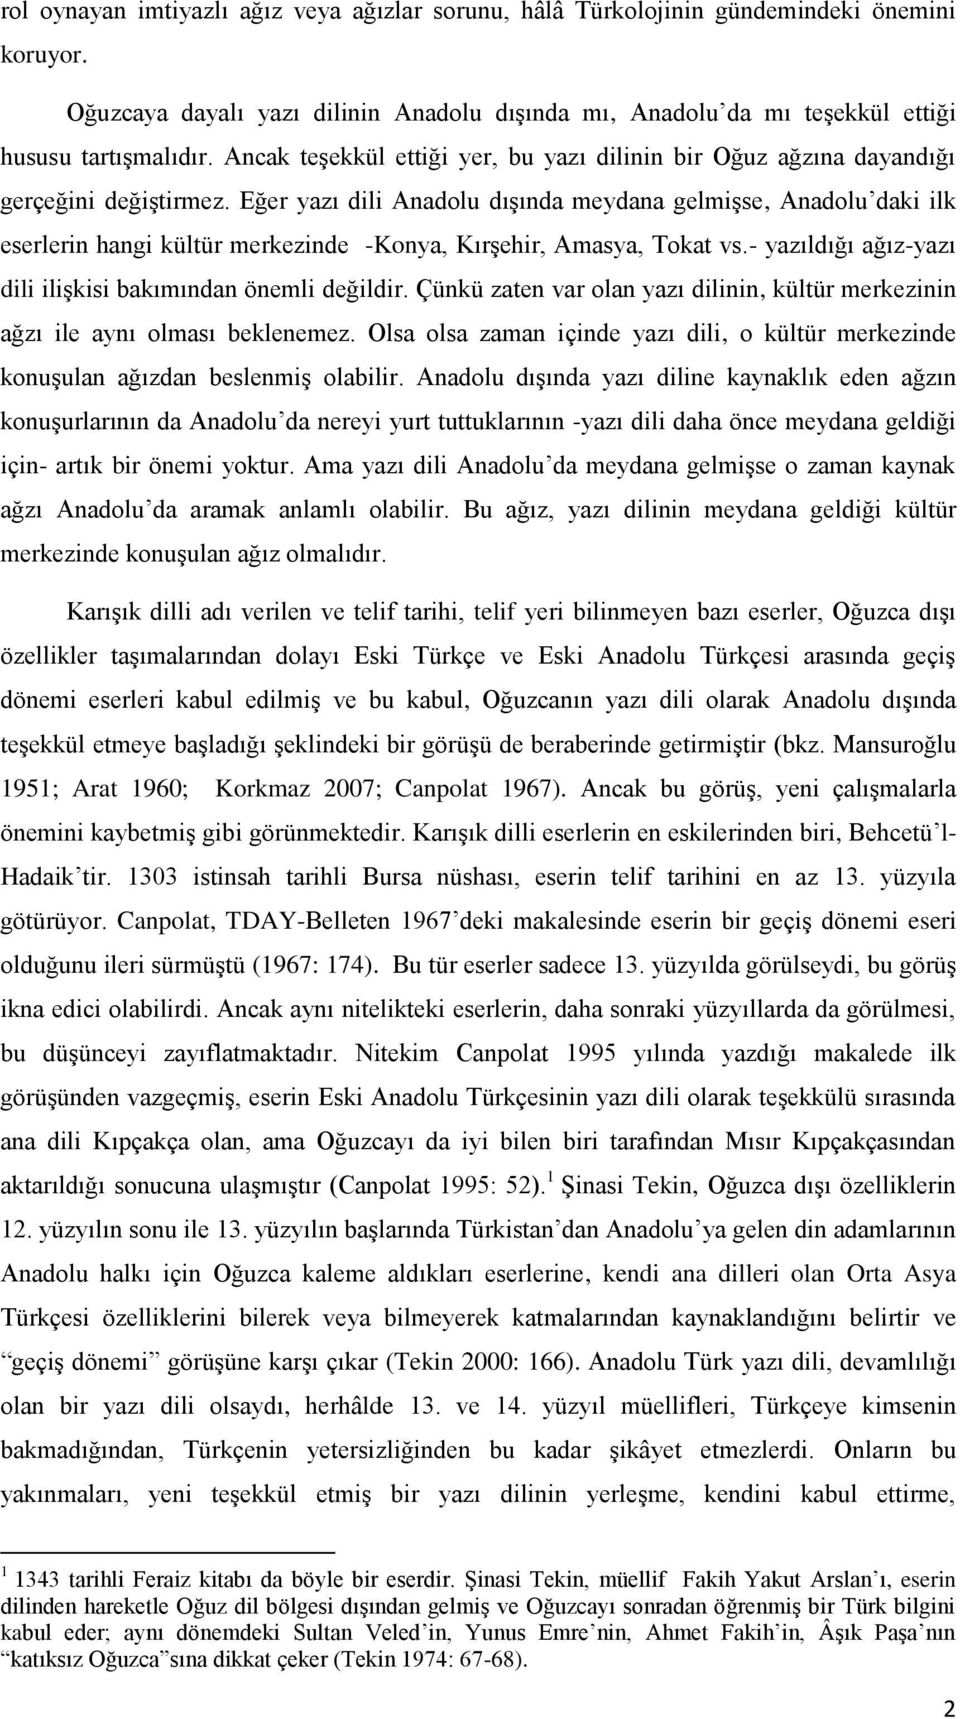 Eğer yazı dili Anadolu dışında meydana gelmişse, Anadolu daki ilk eserlerin hangi kültür merkezinde -Konya, Kırşehir, Amasya, Tokat vs.- yazıldığı ağız-yazı dili ilişkisi bakımından önemli değildir.